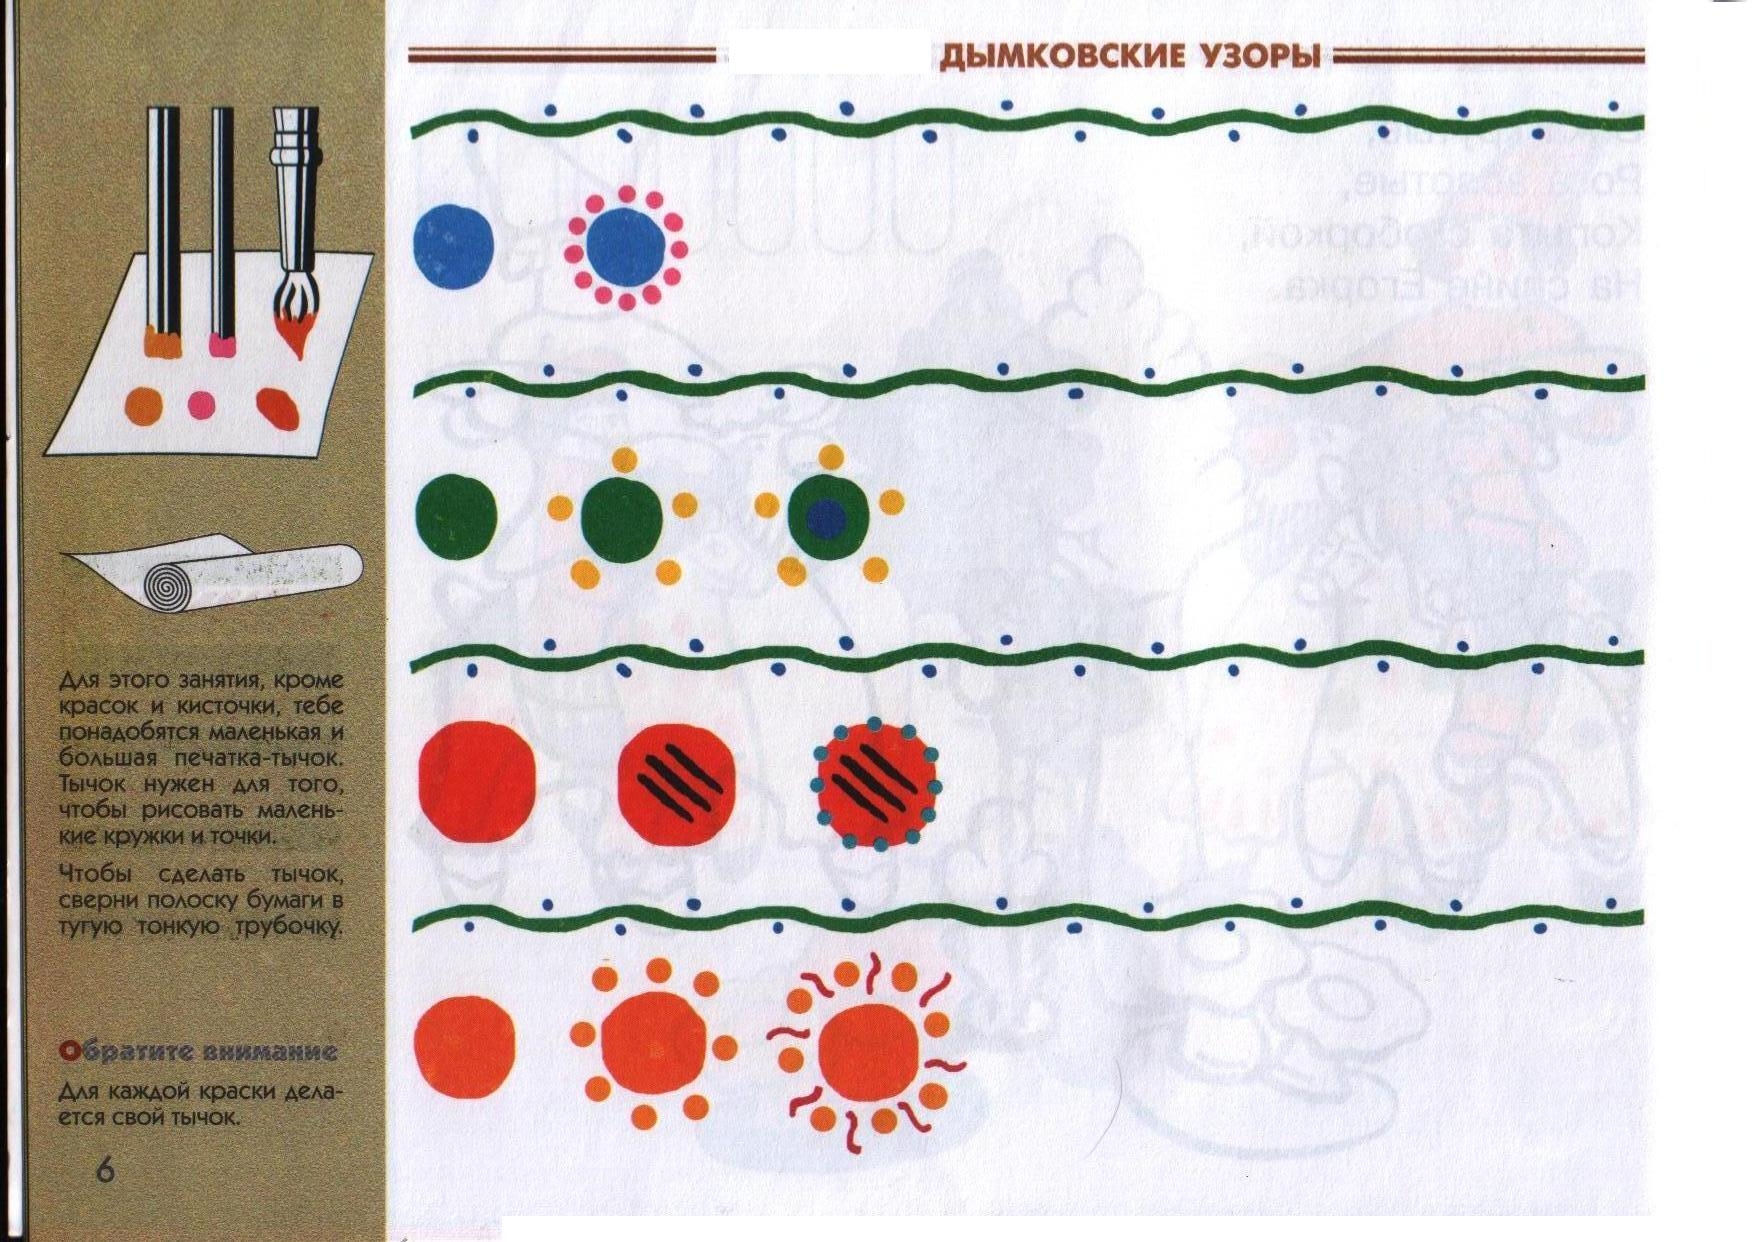 Образцы элементов дымковской росписи